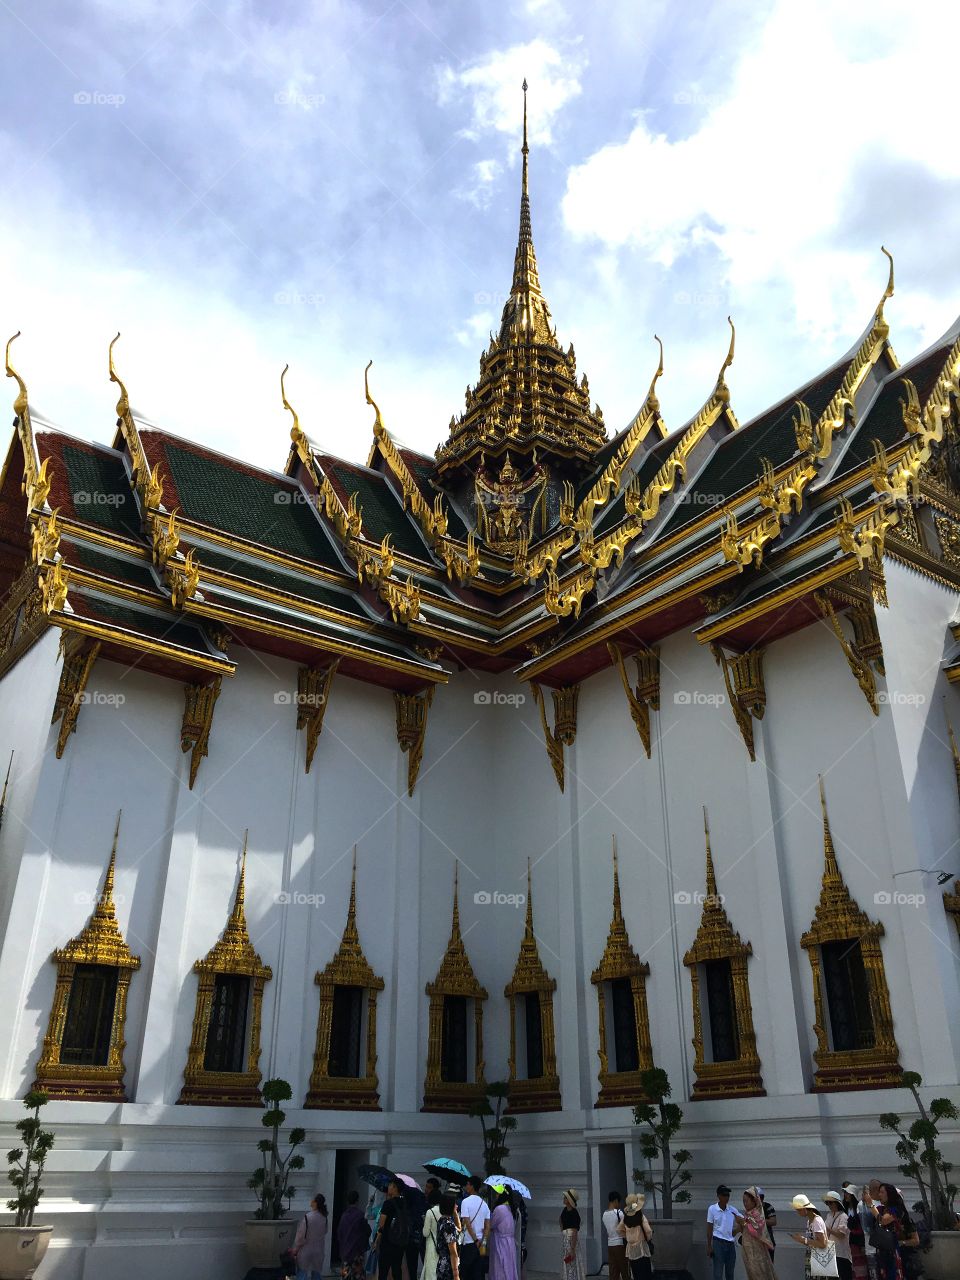 Grand Palace / Bangkok Thailand 78